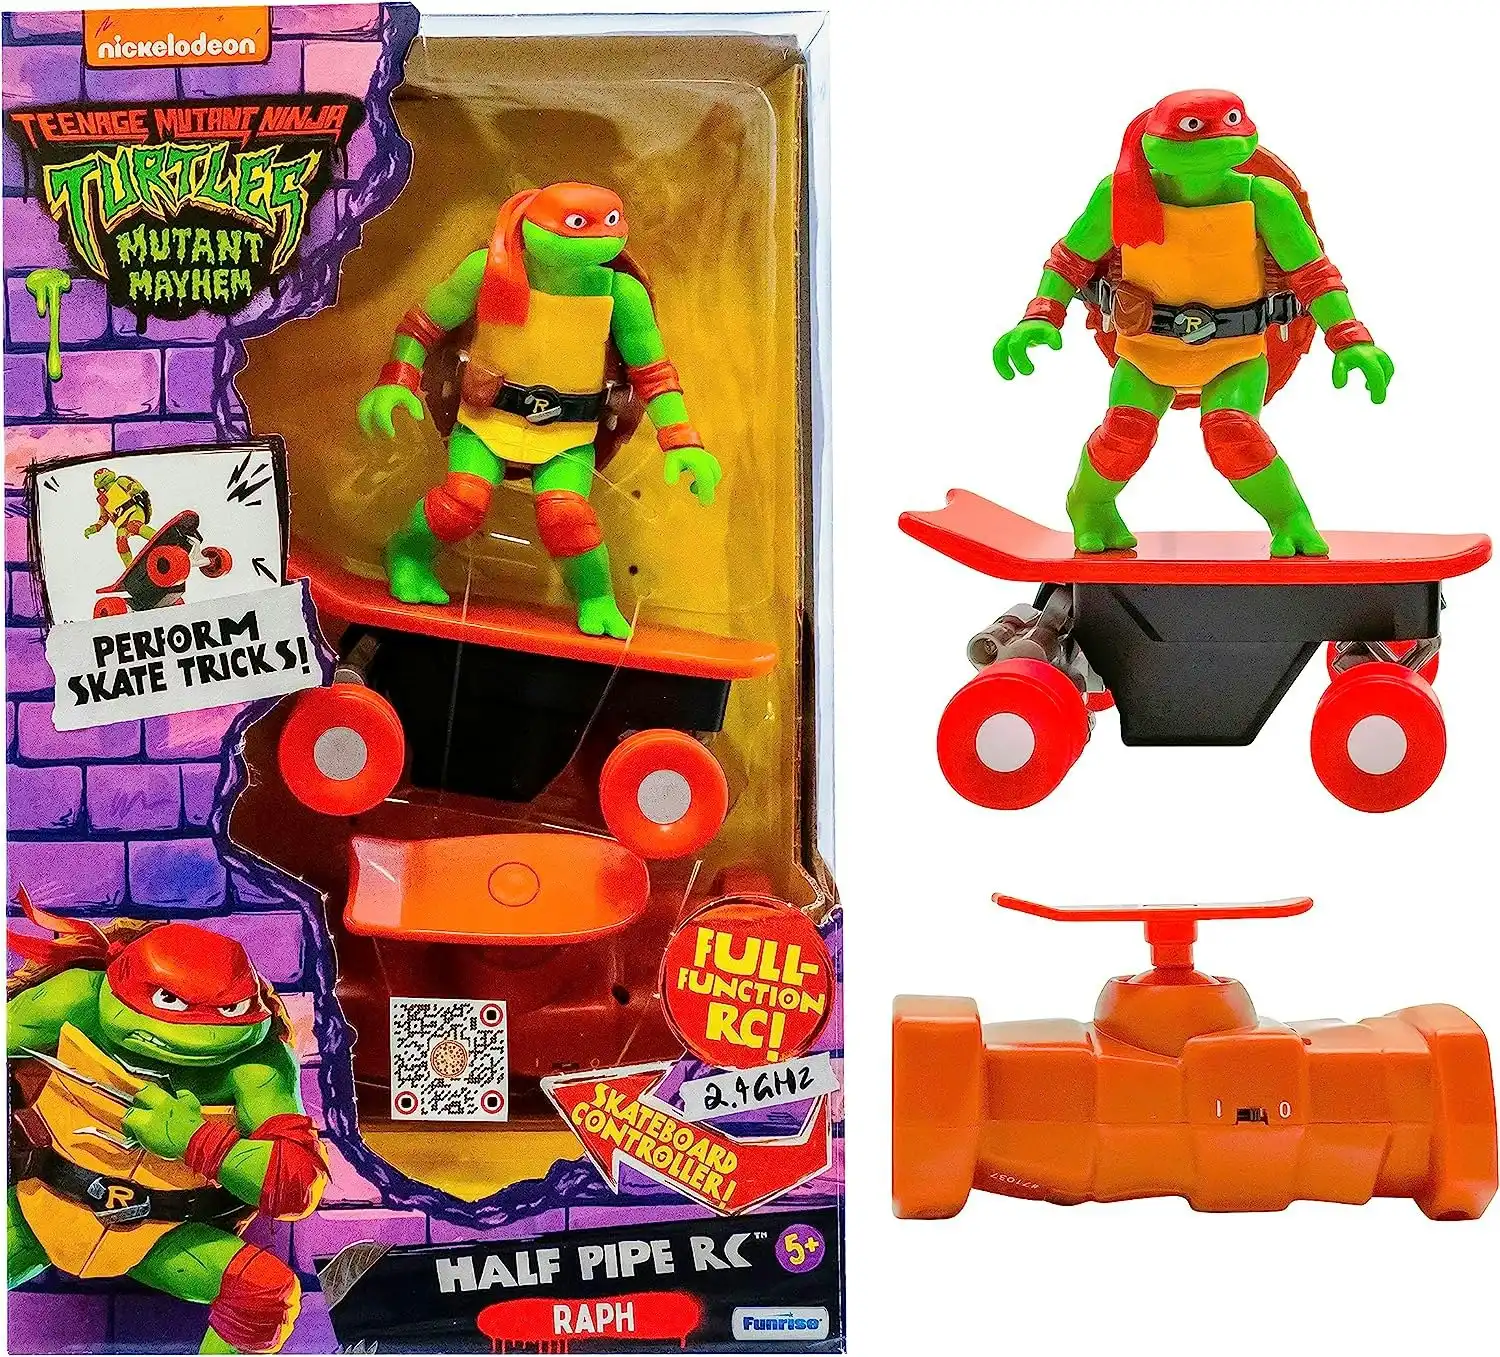 Teenage Mutant Ninja Turtles Half Pipe RC Vehicle - Raphael (Movie)